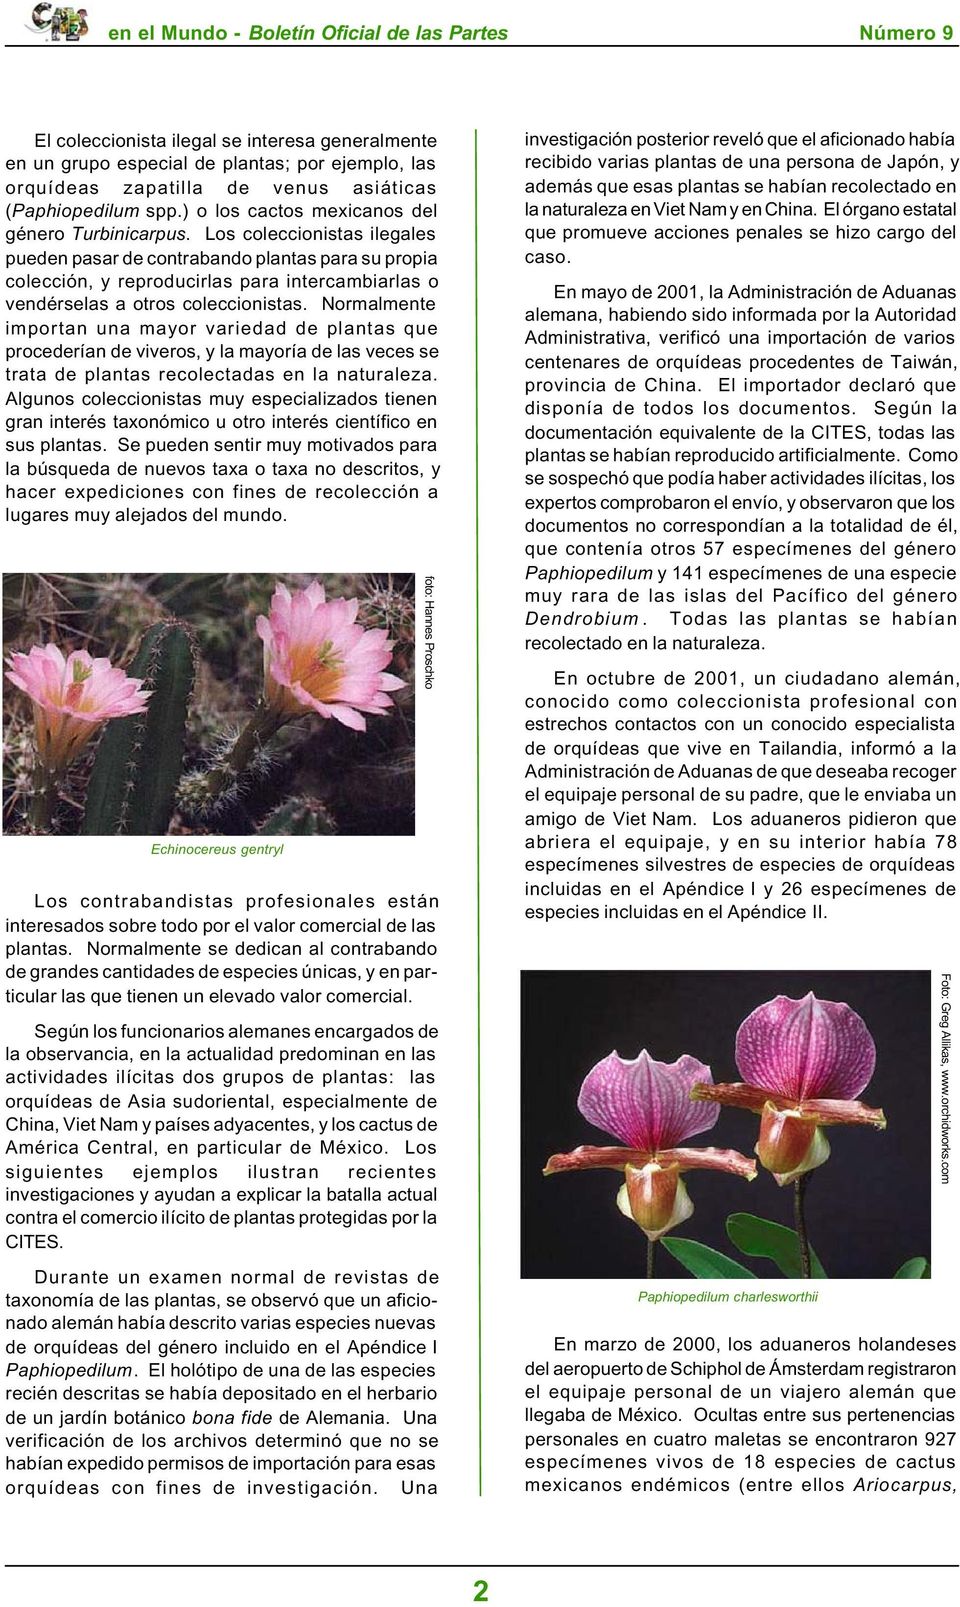 (Paphiopedilum spp.) o los cactos mexicanos del género Turbinicarpus.